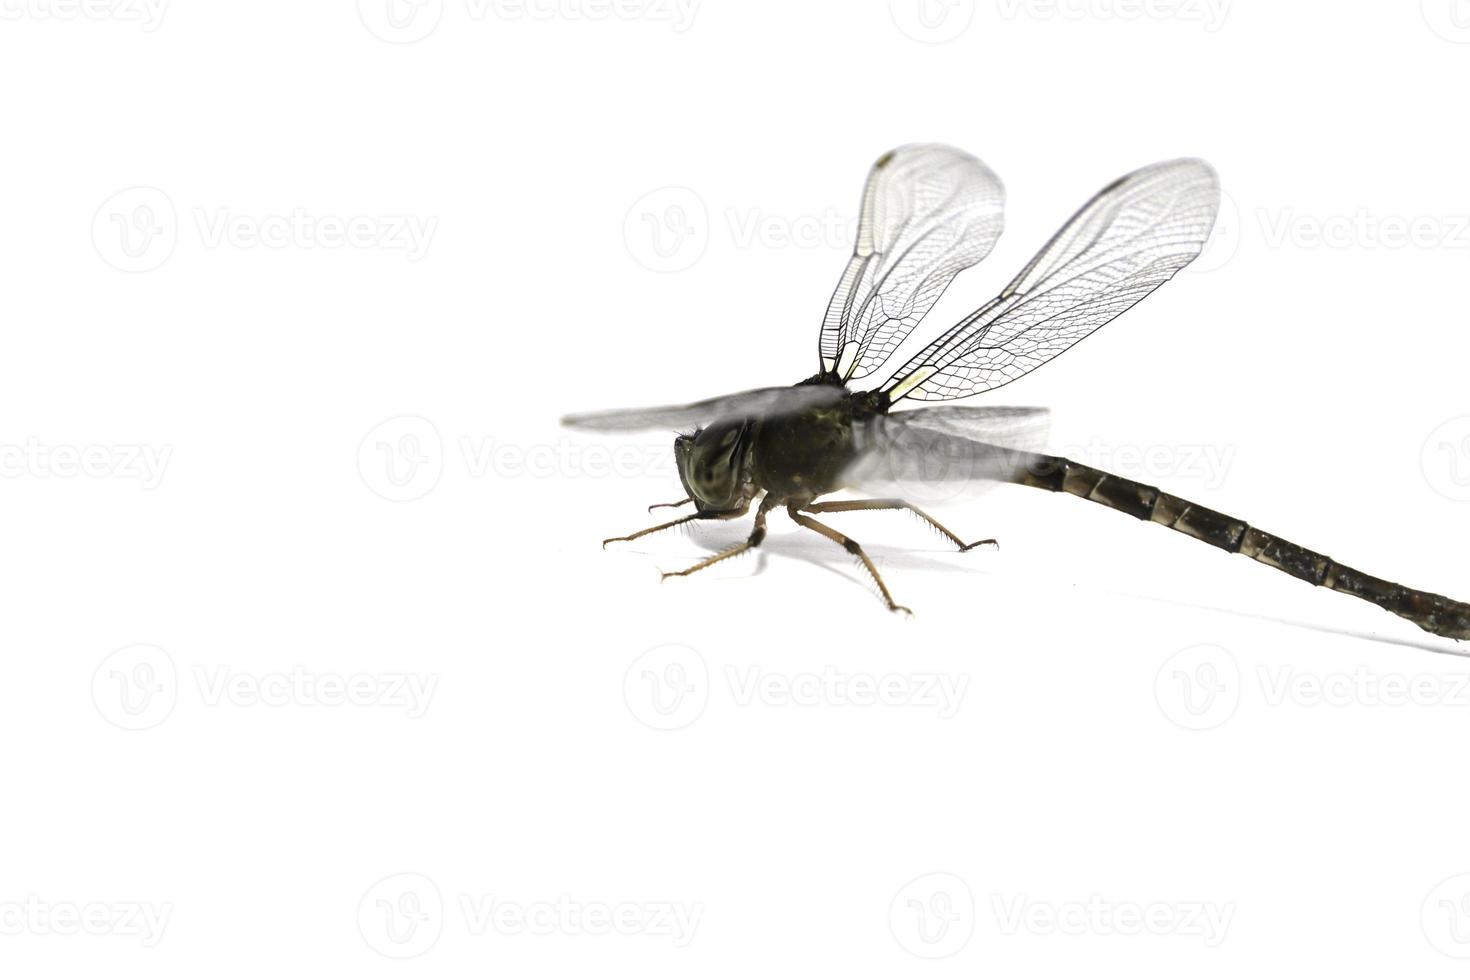 trollslända- är bevingade insekter som flyger och hittar mat. det är en liten insekt av olika färger och arter på en vit bakgrund. foto